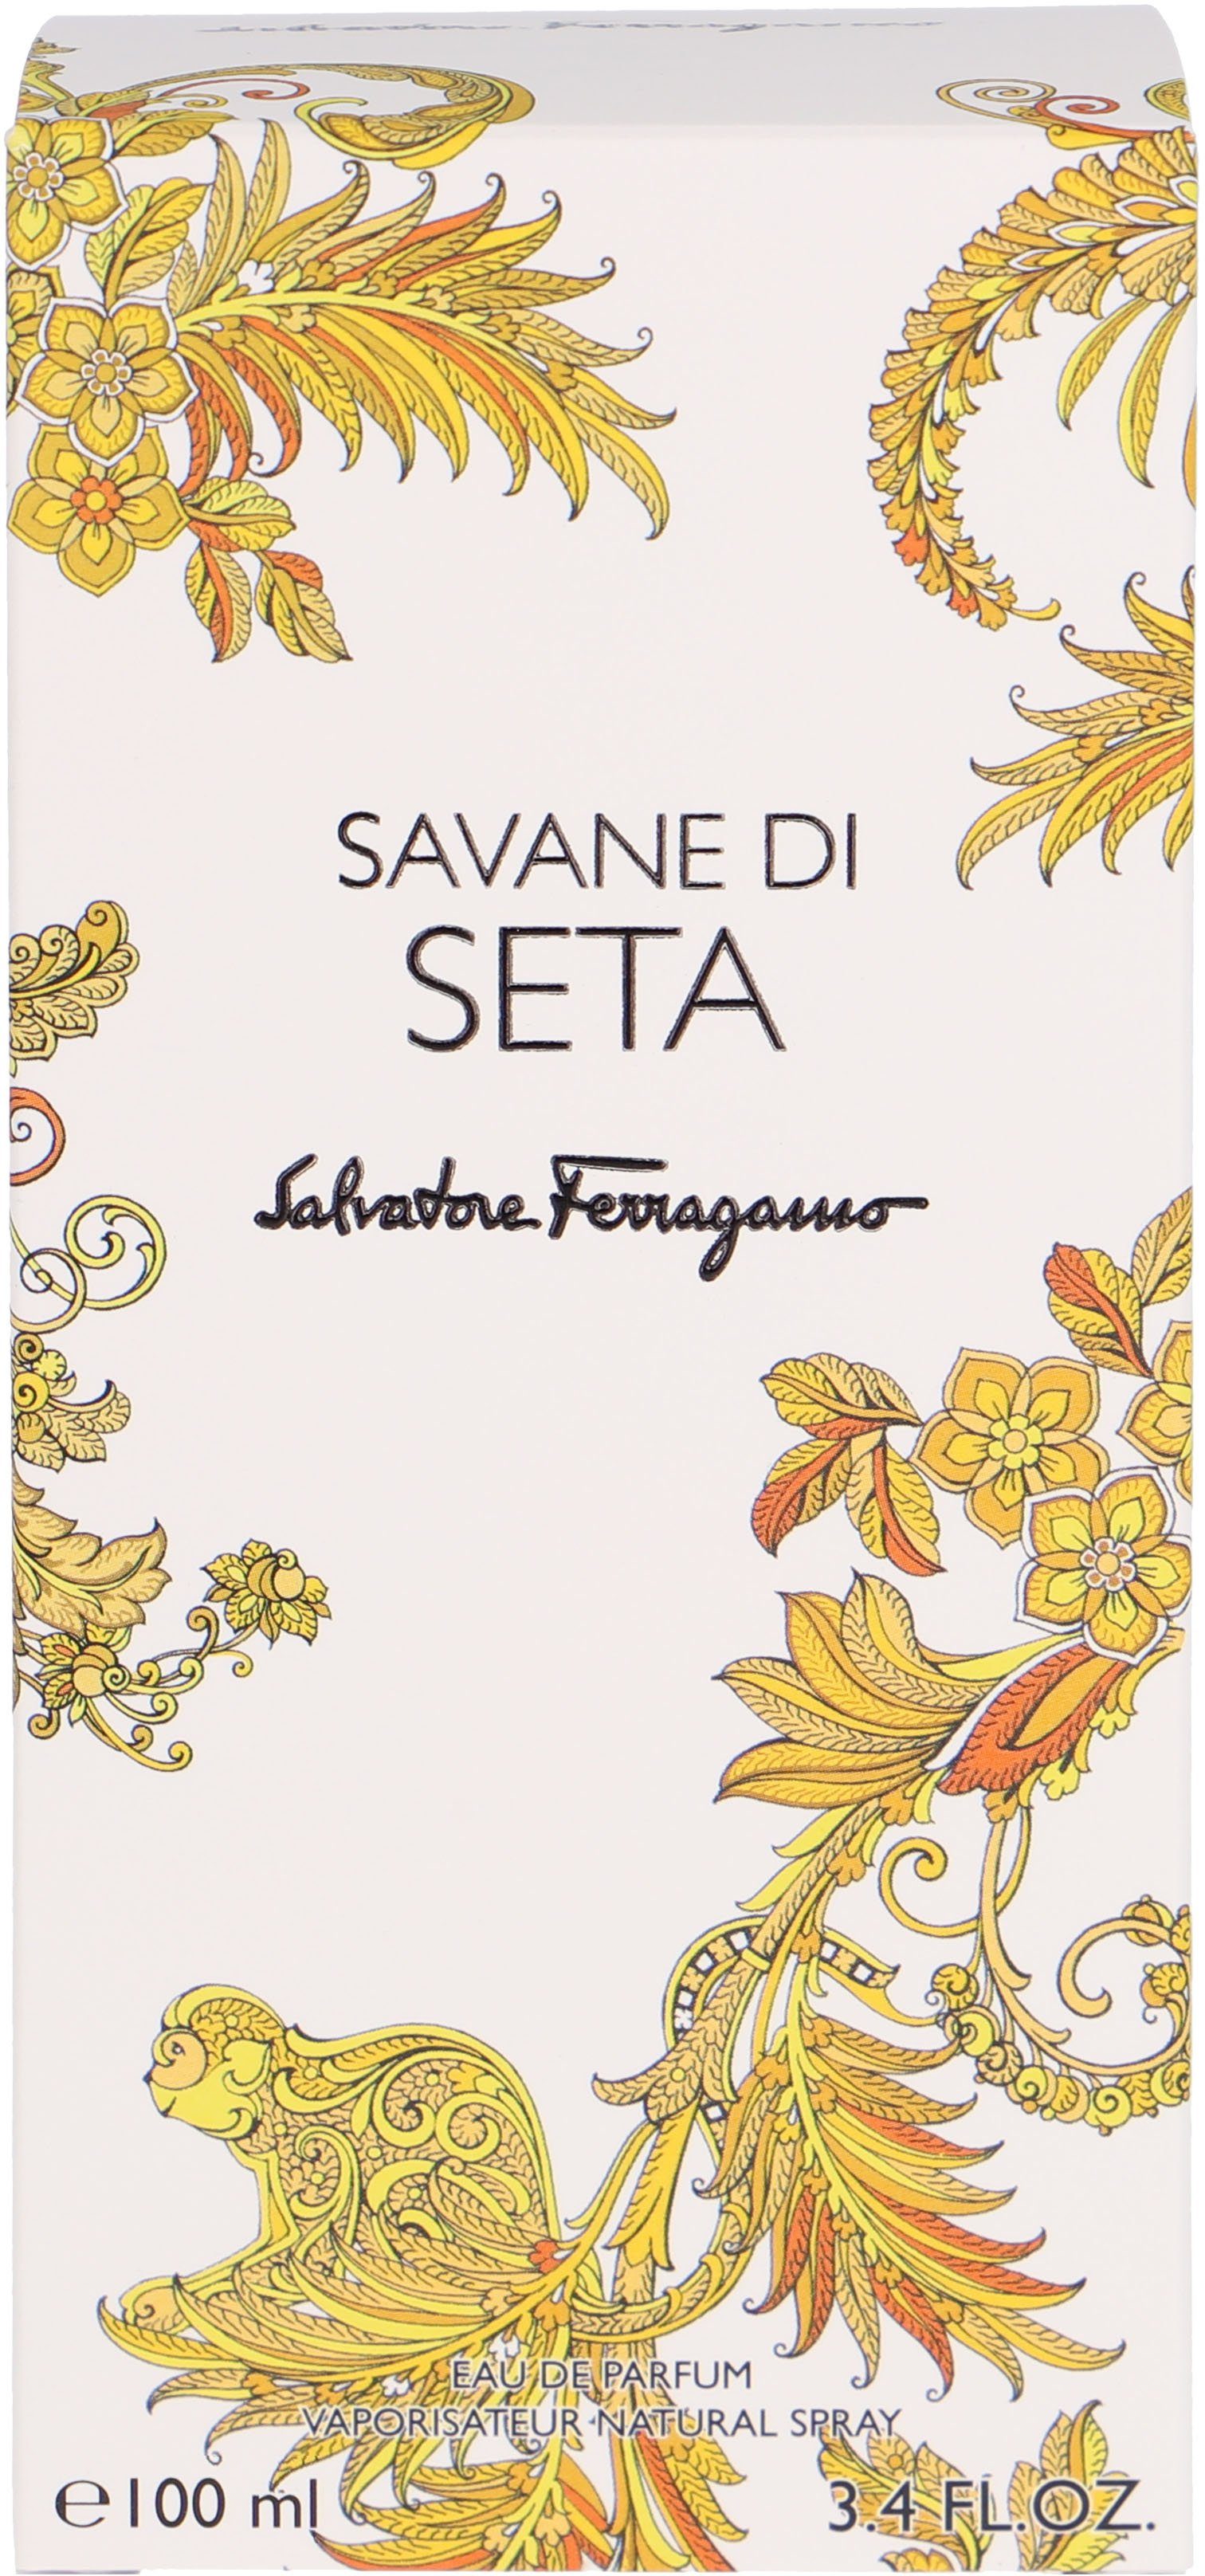 Savane Seta di Eau Salvatore Ferragamo de Parfum